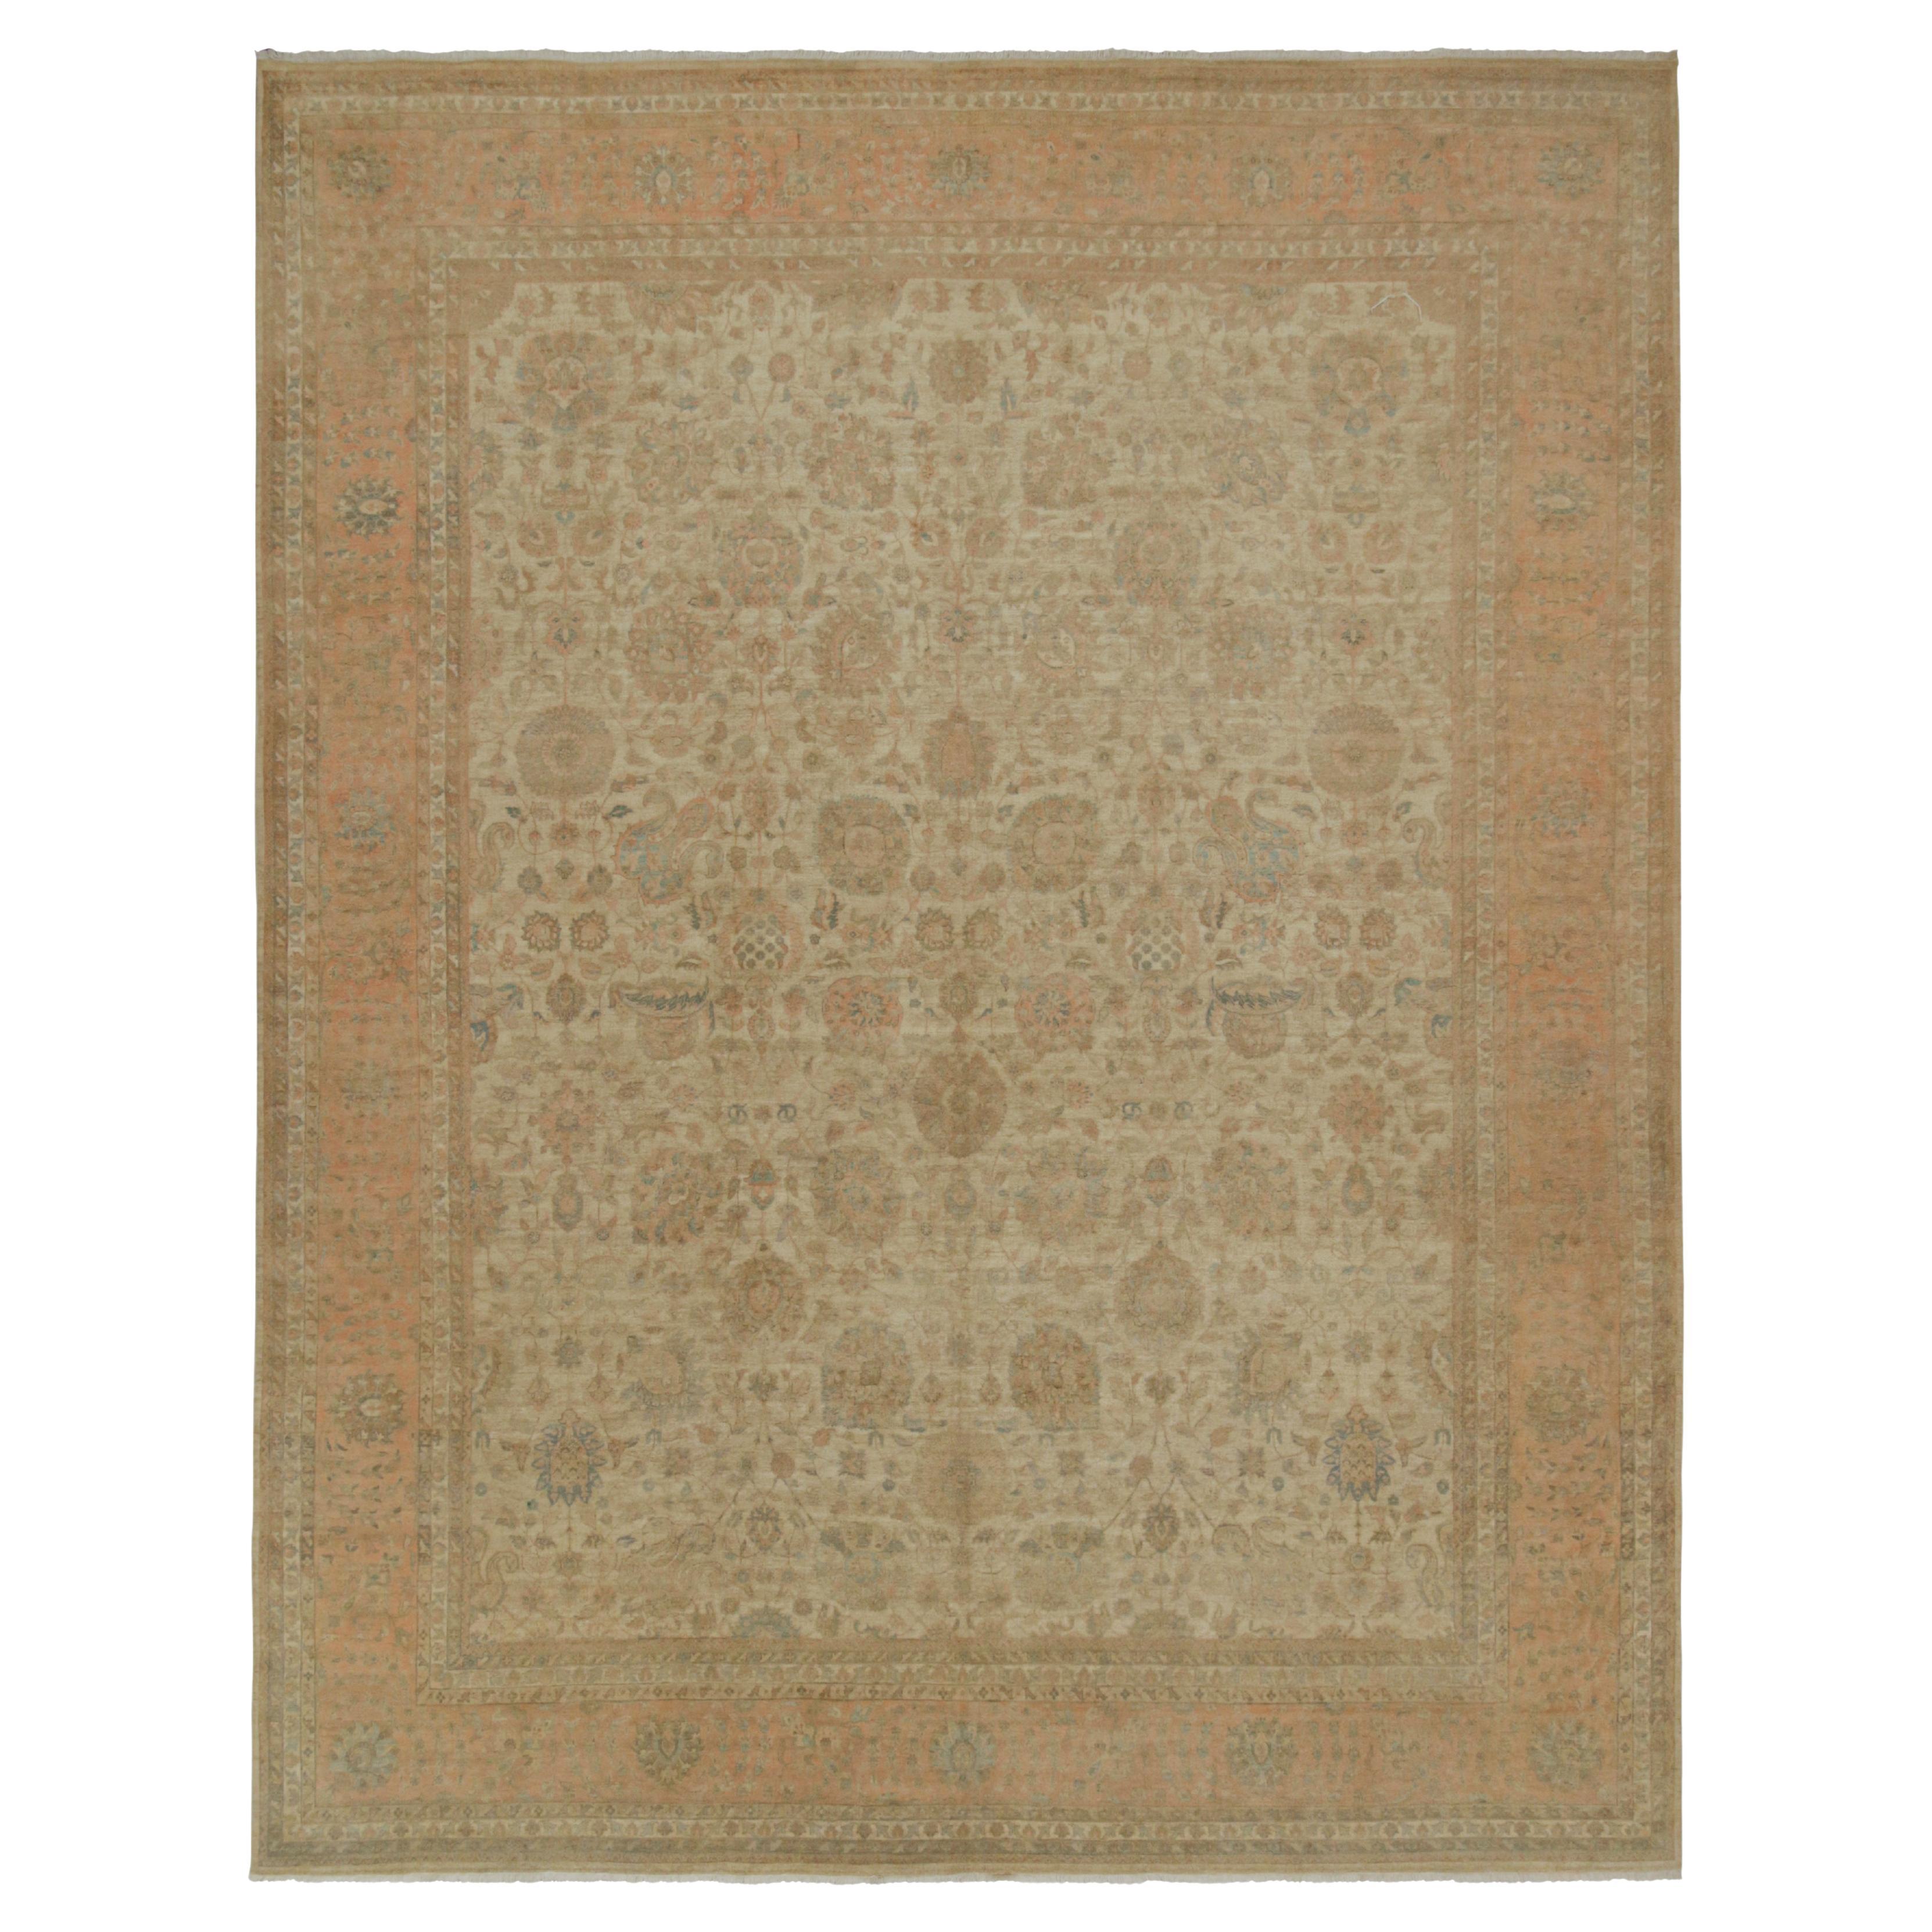 Klassischer Teppich im persischen Stil von Teppich & Kilims in Beige-Braun mit rosa Blumenmuster